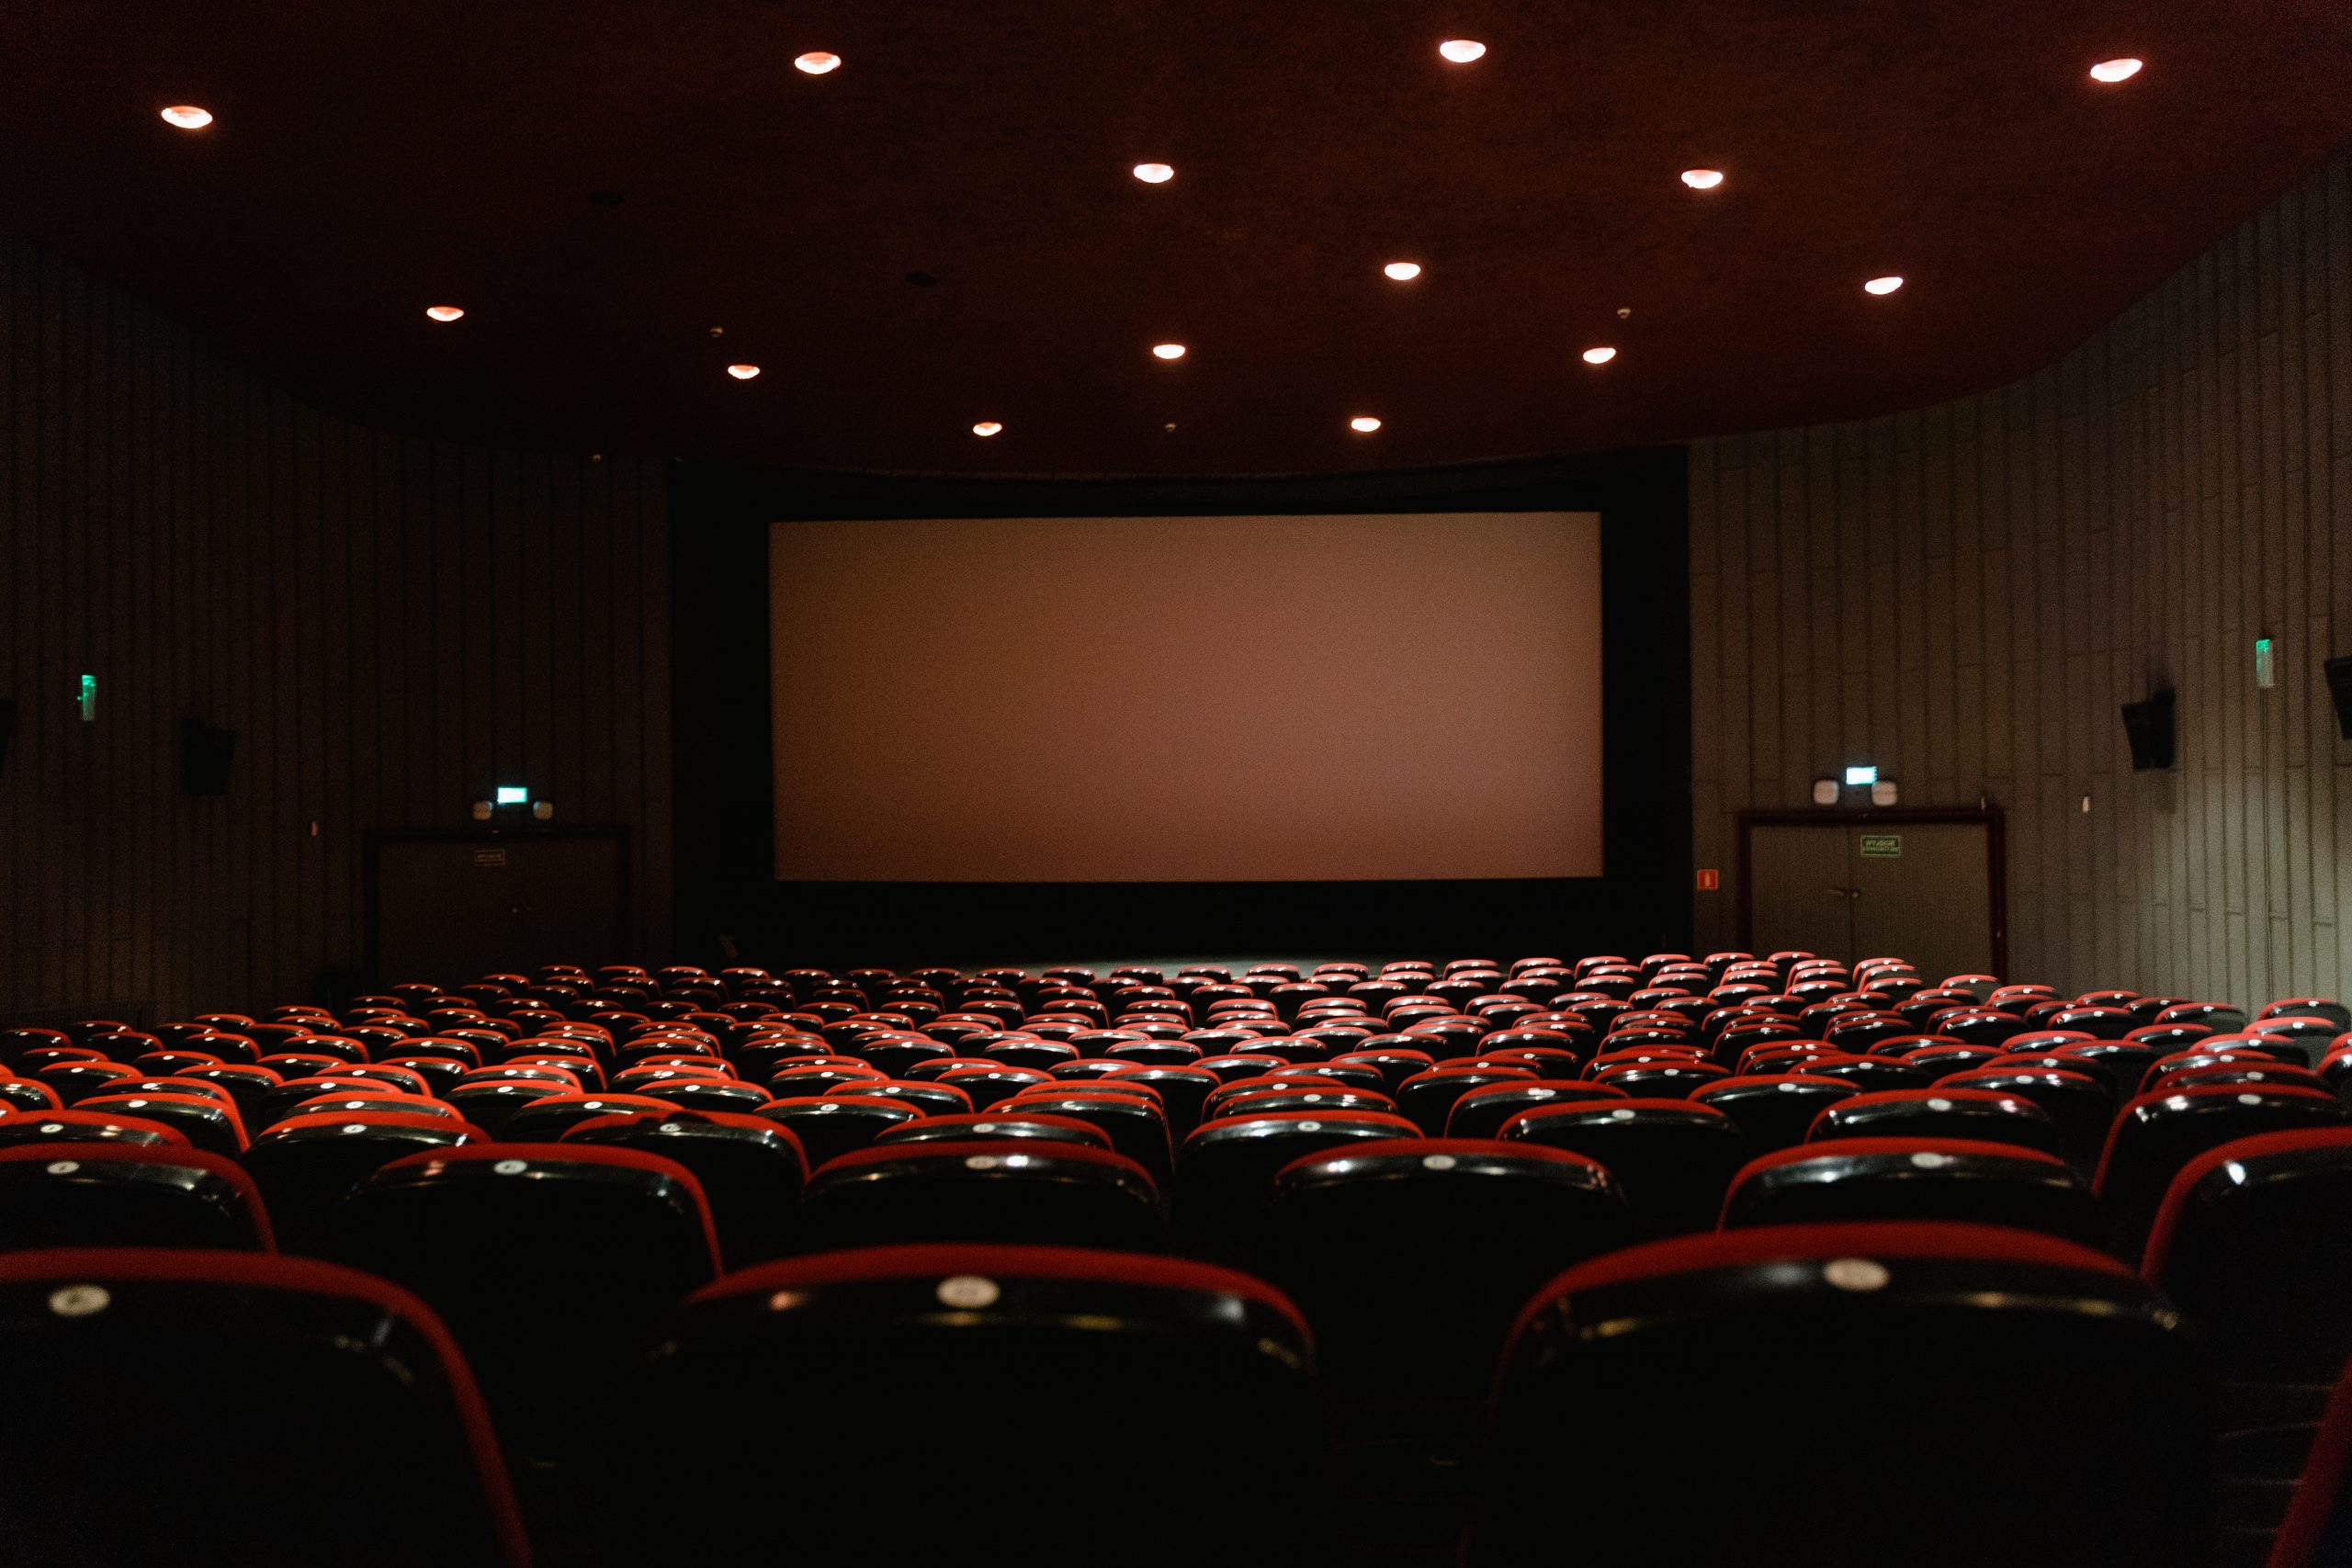 Festa do Cinema está de regresso. Durante quatro dias, os bilhetes de cinema vão custar 3,5 euros